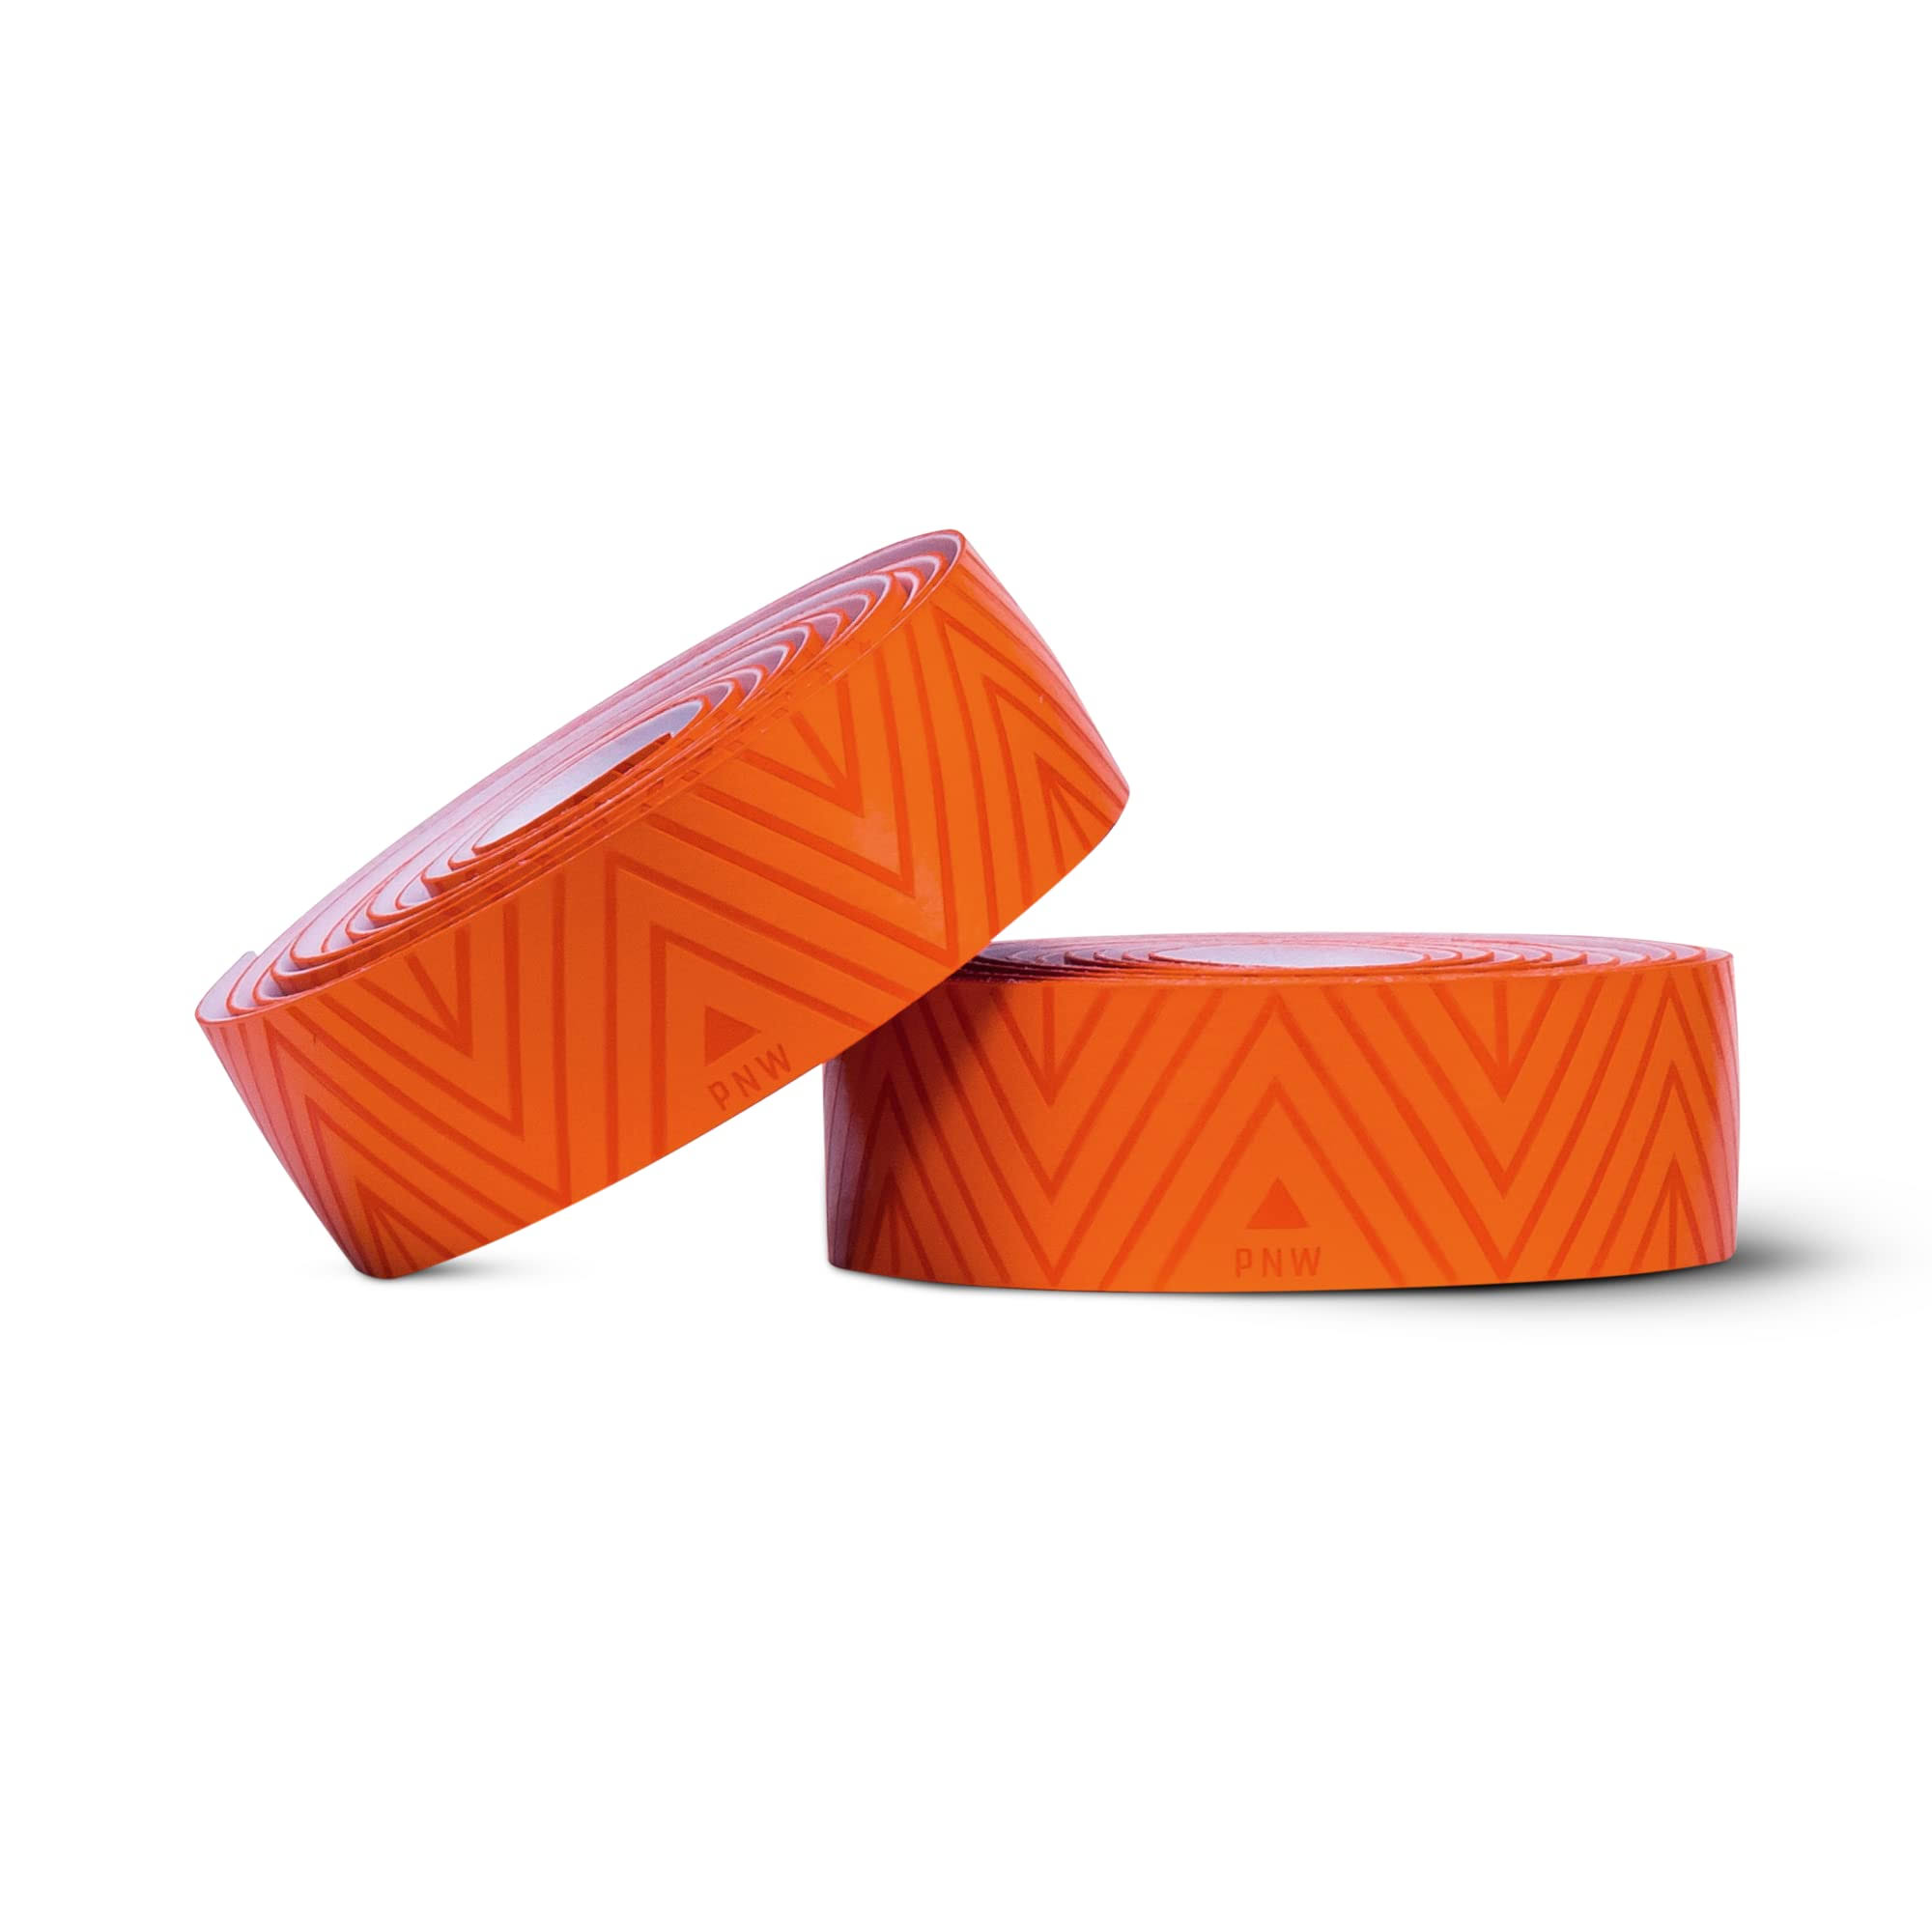 Pnw Components Coast Bar Tape (Safety Orange)